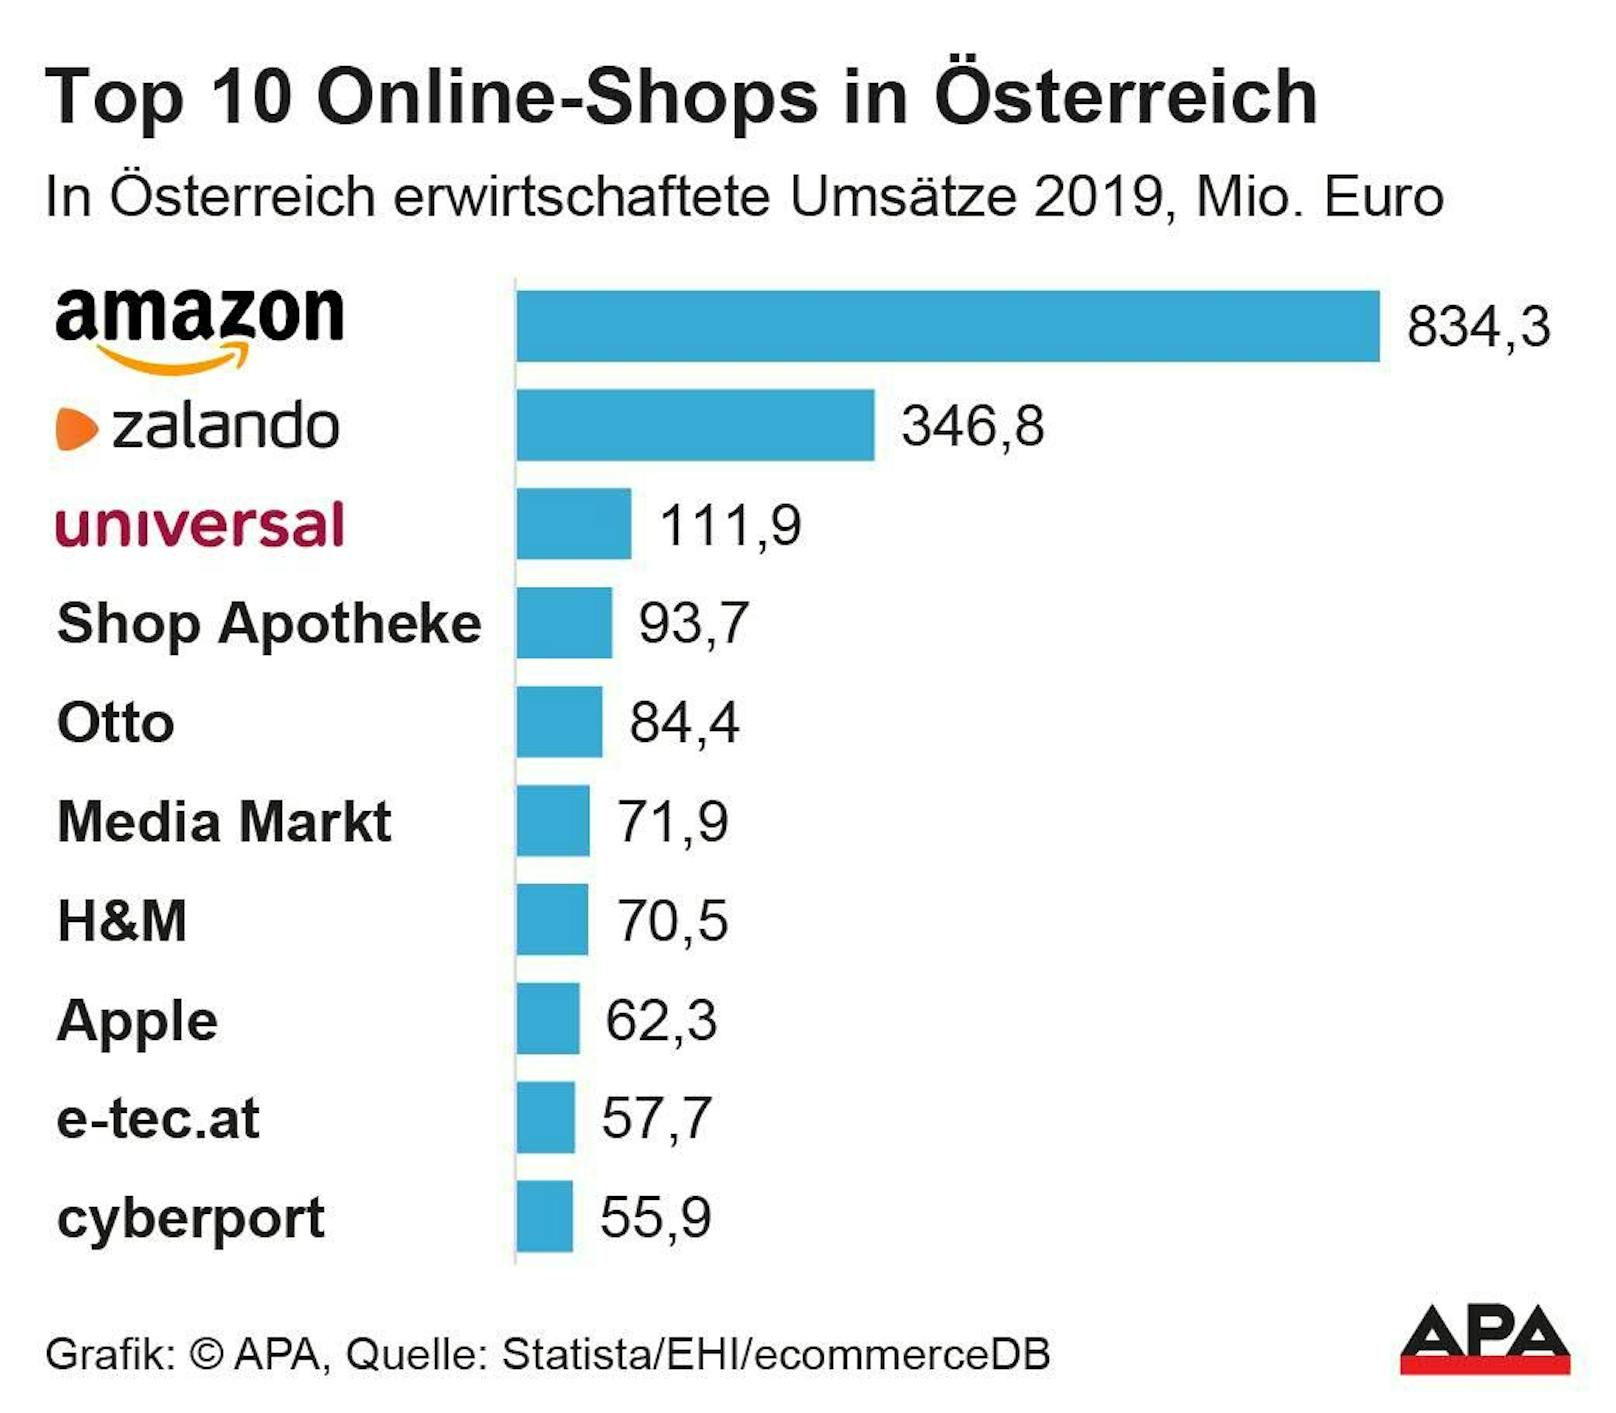 Top 10 Online-Shops in Österreich 